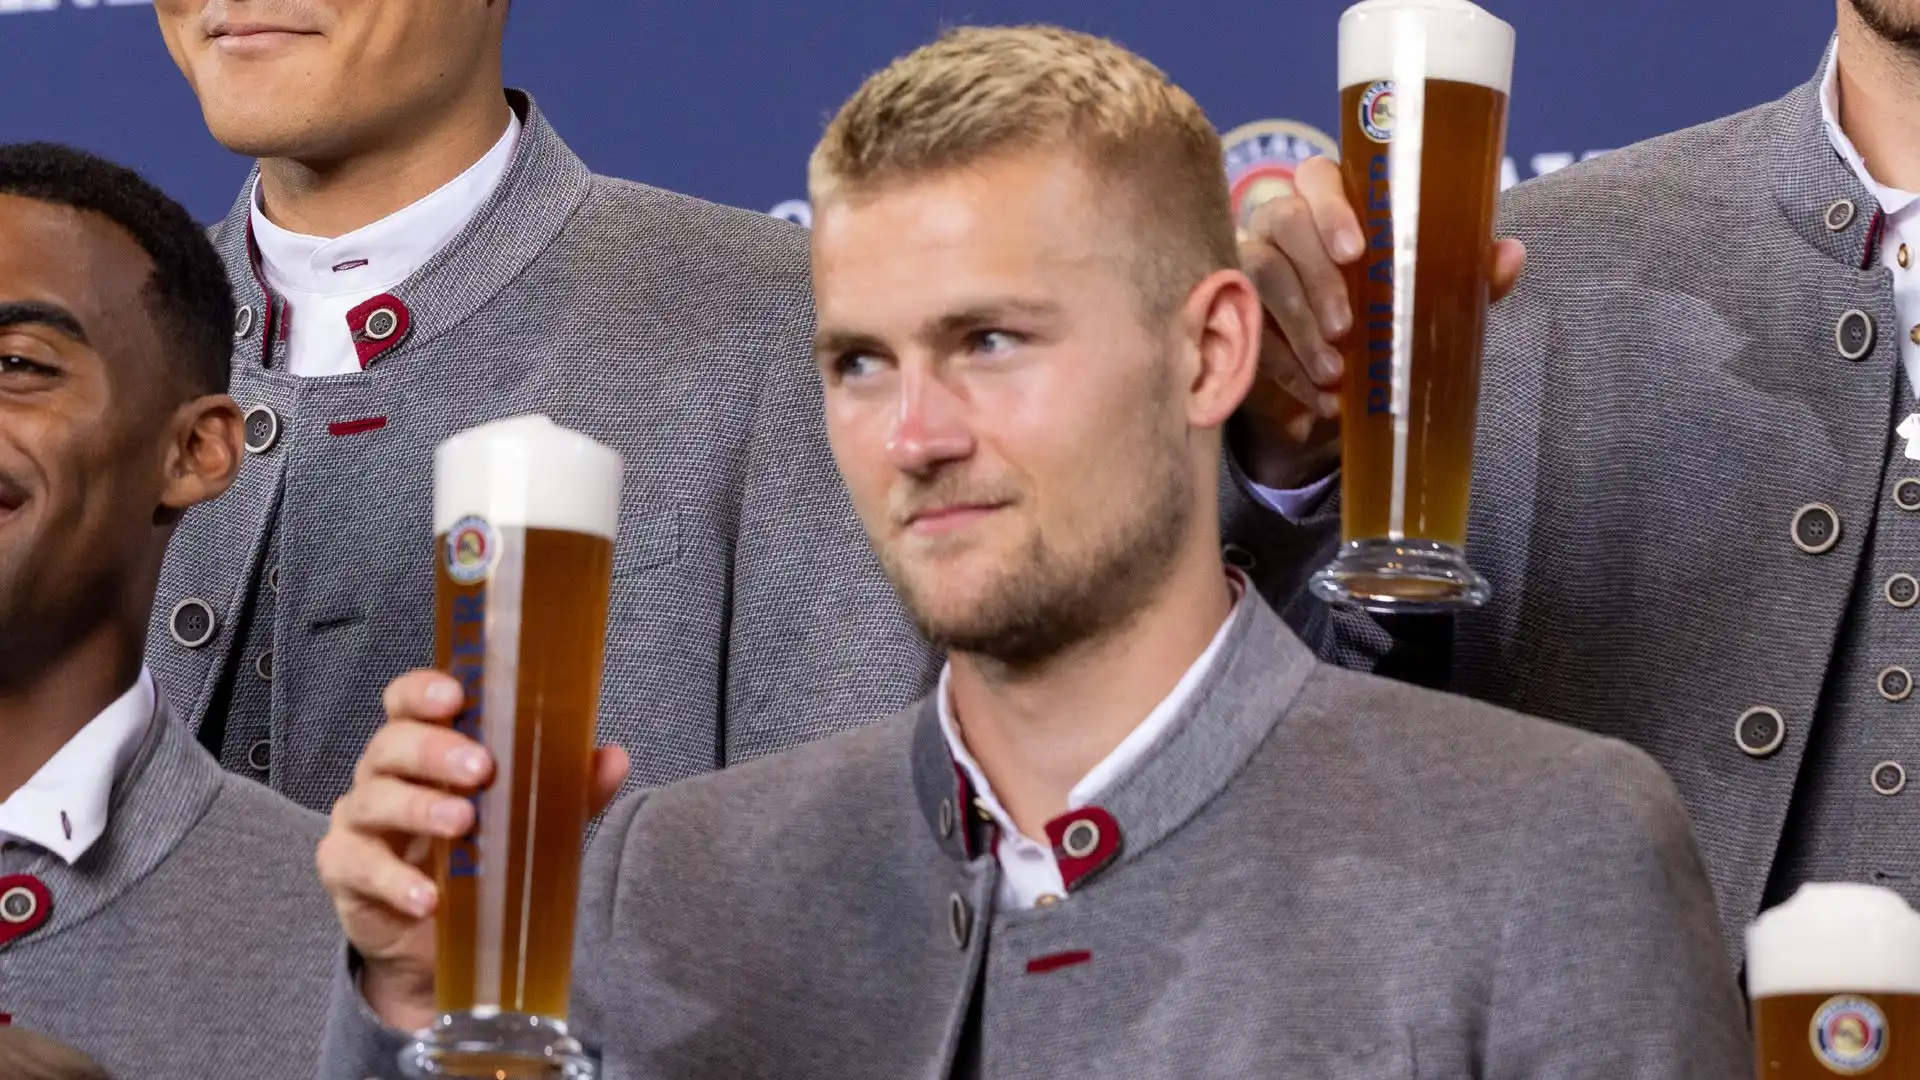 I calciatori del Bayern hanno posato davanti all'obiettivo con le birre in mano